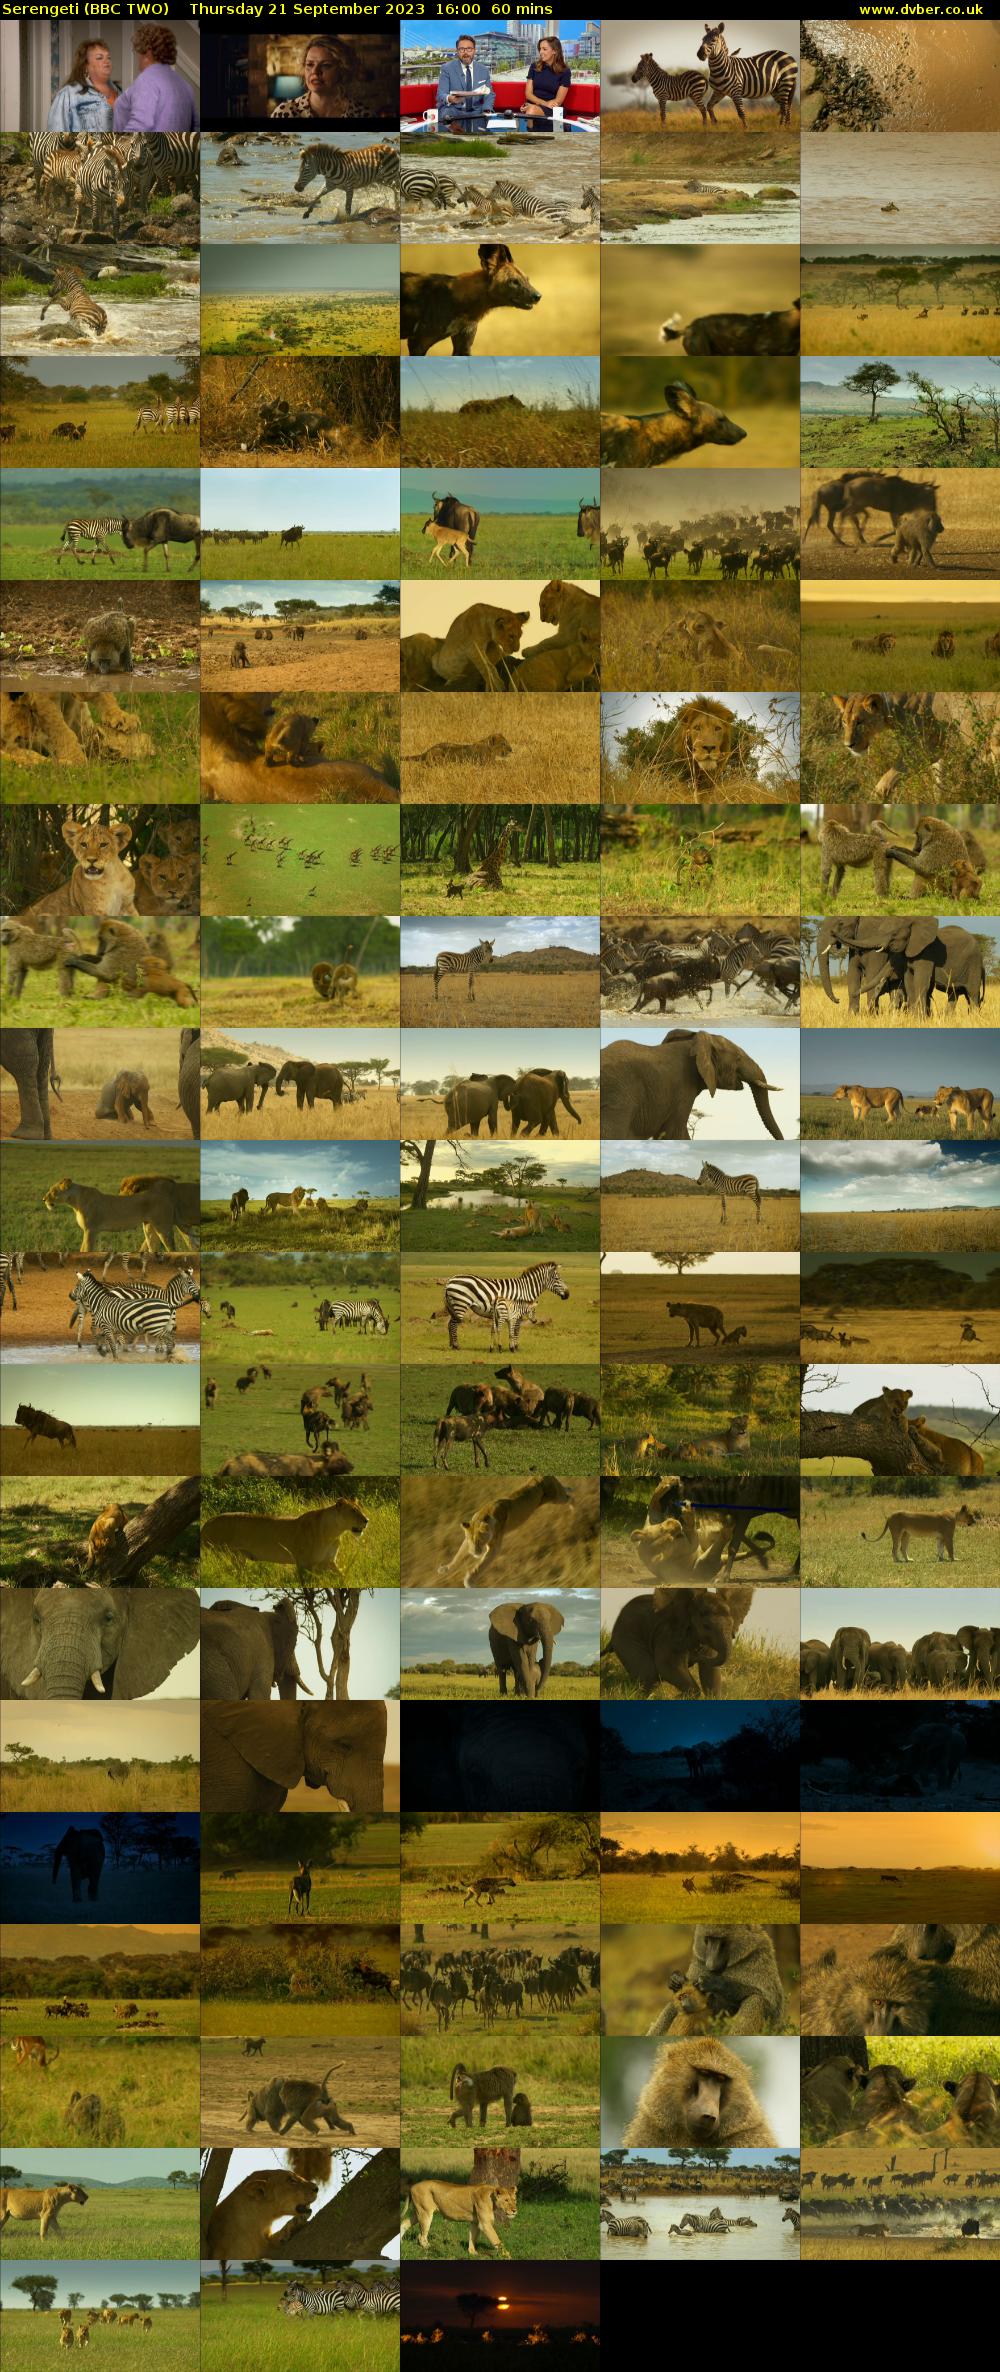 Serengeti (BBC TWO) Thursday 21 September 2023 16:00 - 17:00